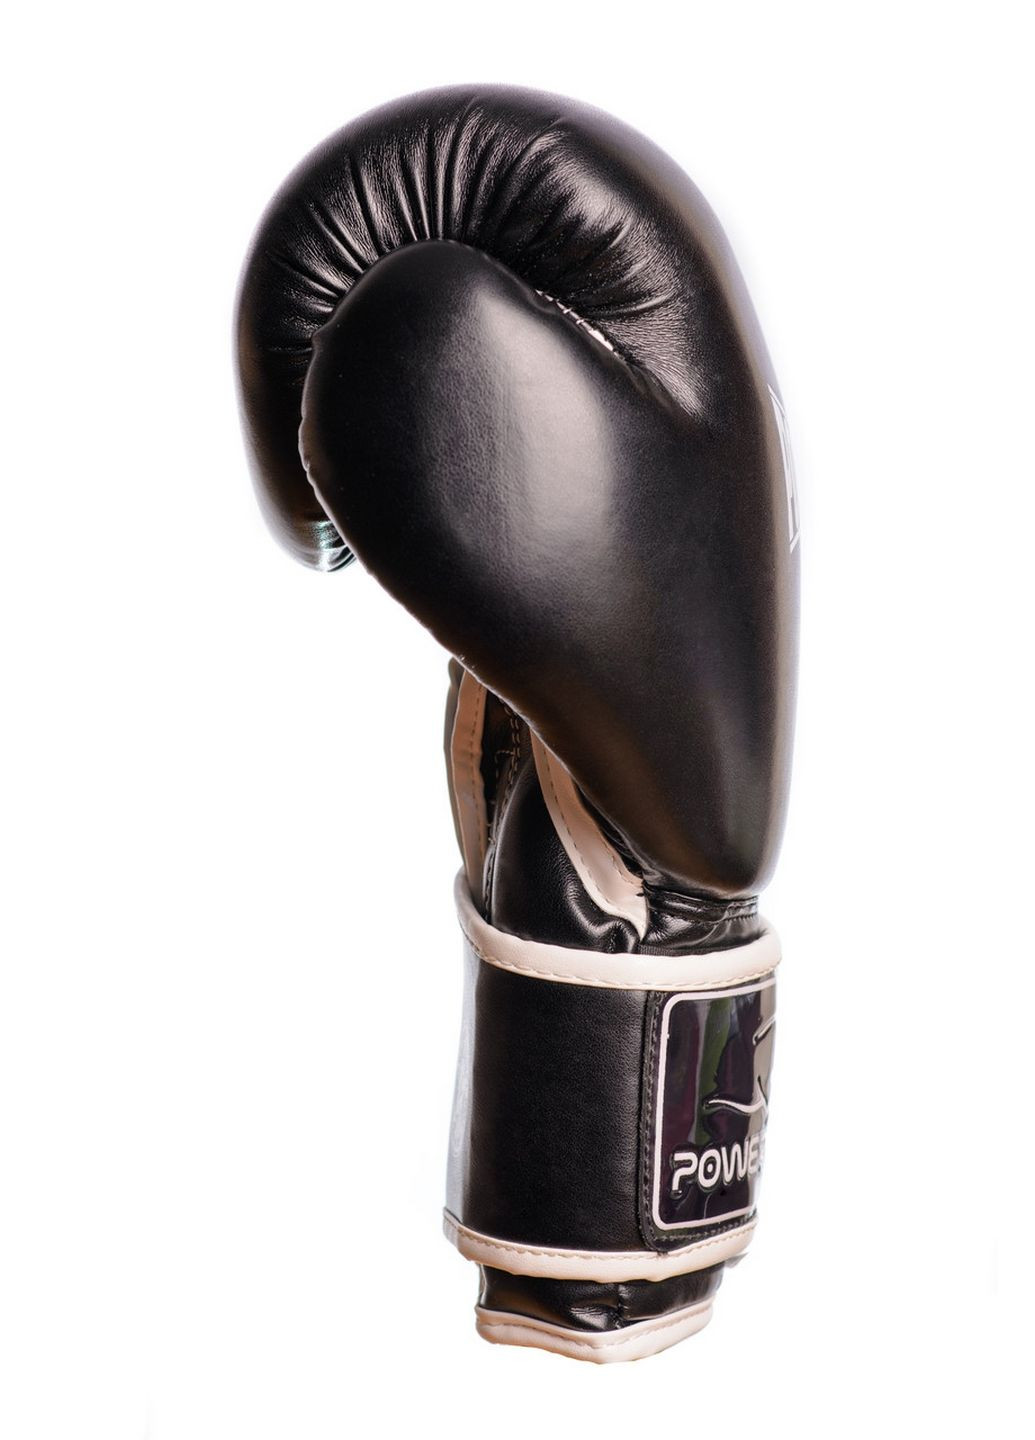 Боксерские перчатки PowerPlay (282587044)